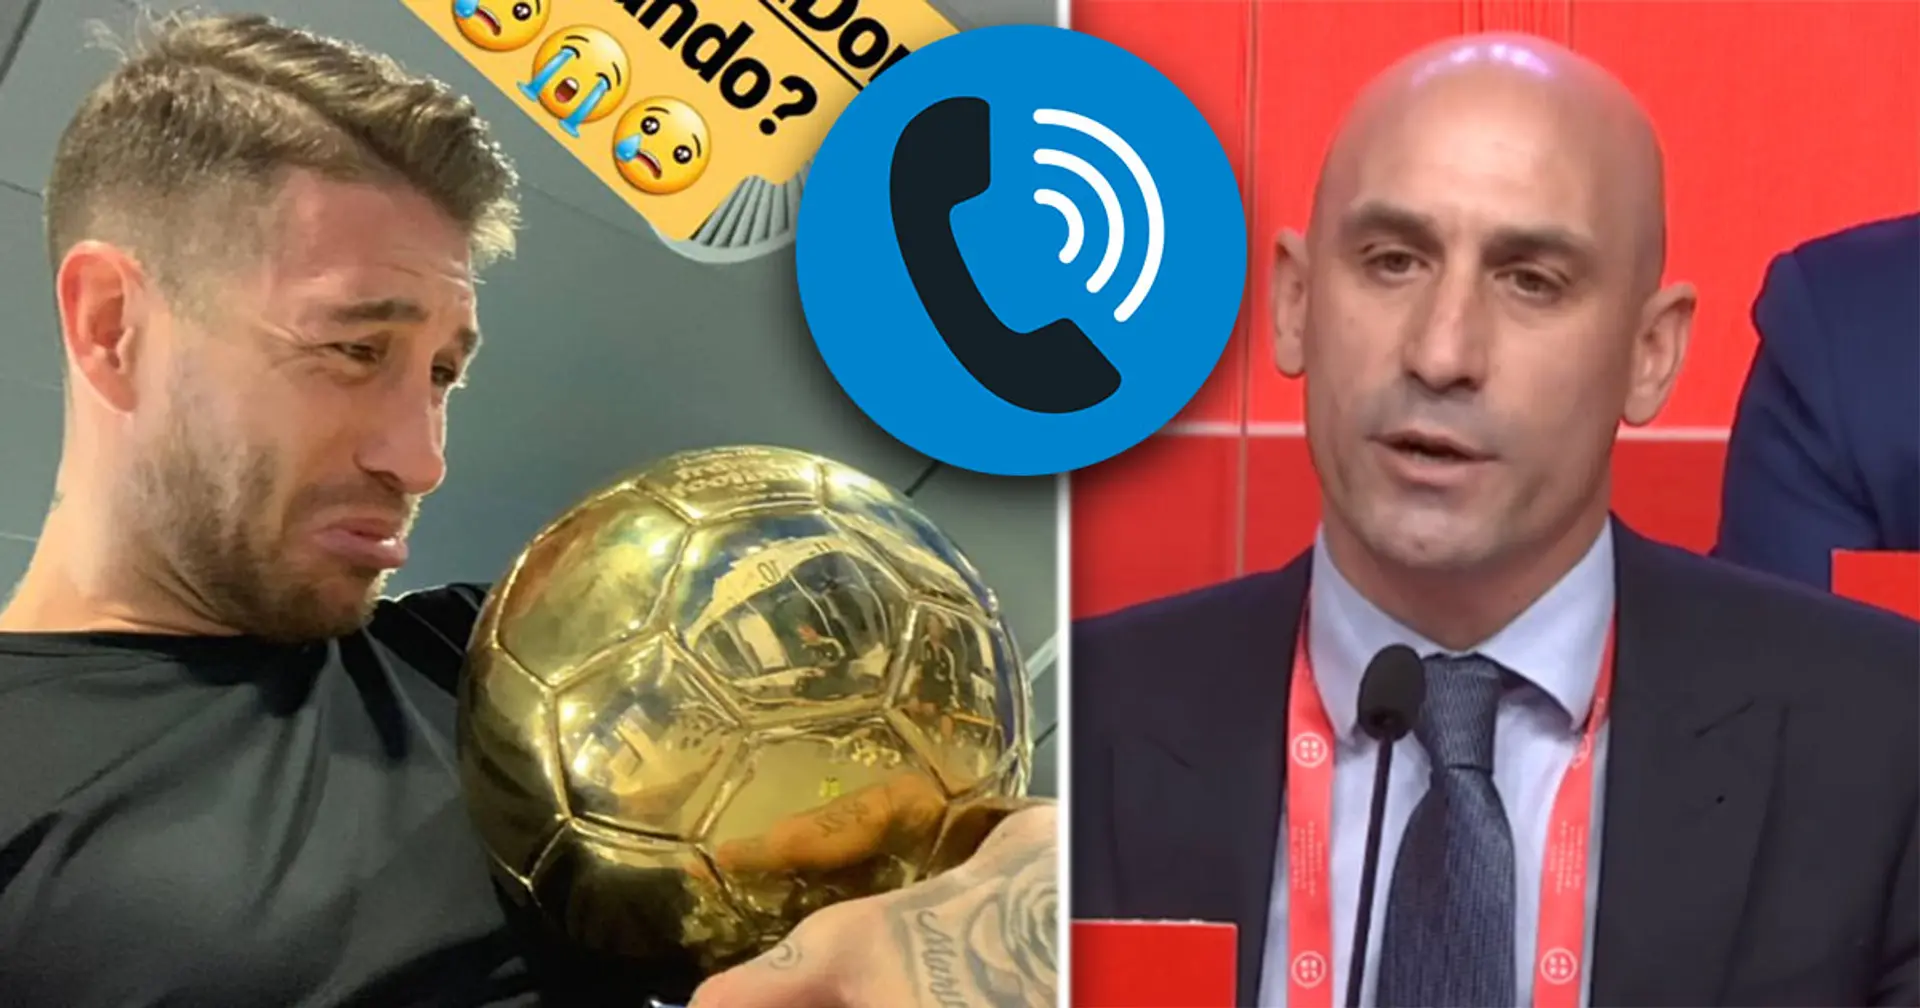 "Le football espagnol le mérite": Un enregistrement audio révèle que Sergio Ramos a demandé au président de la FA de l'aider à remporter le Ballon d'Or